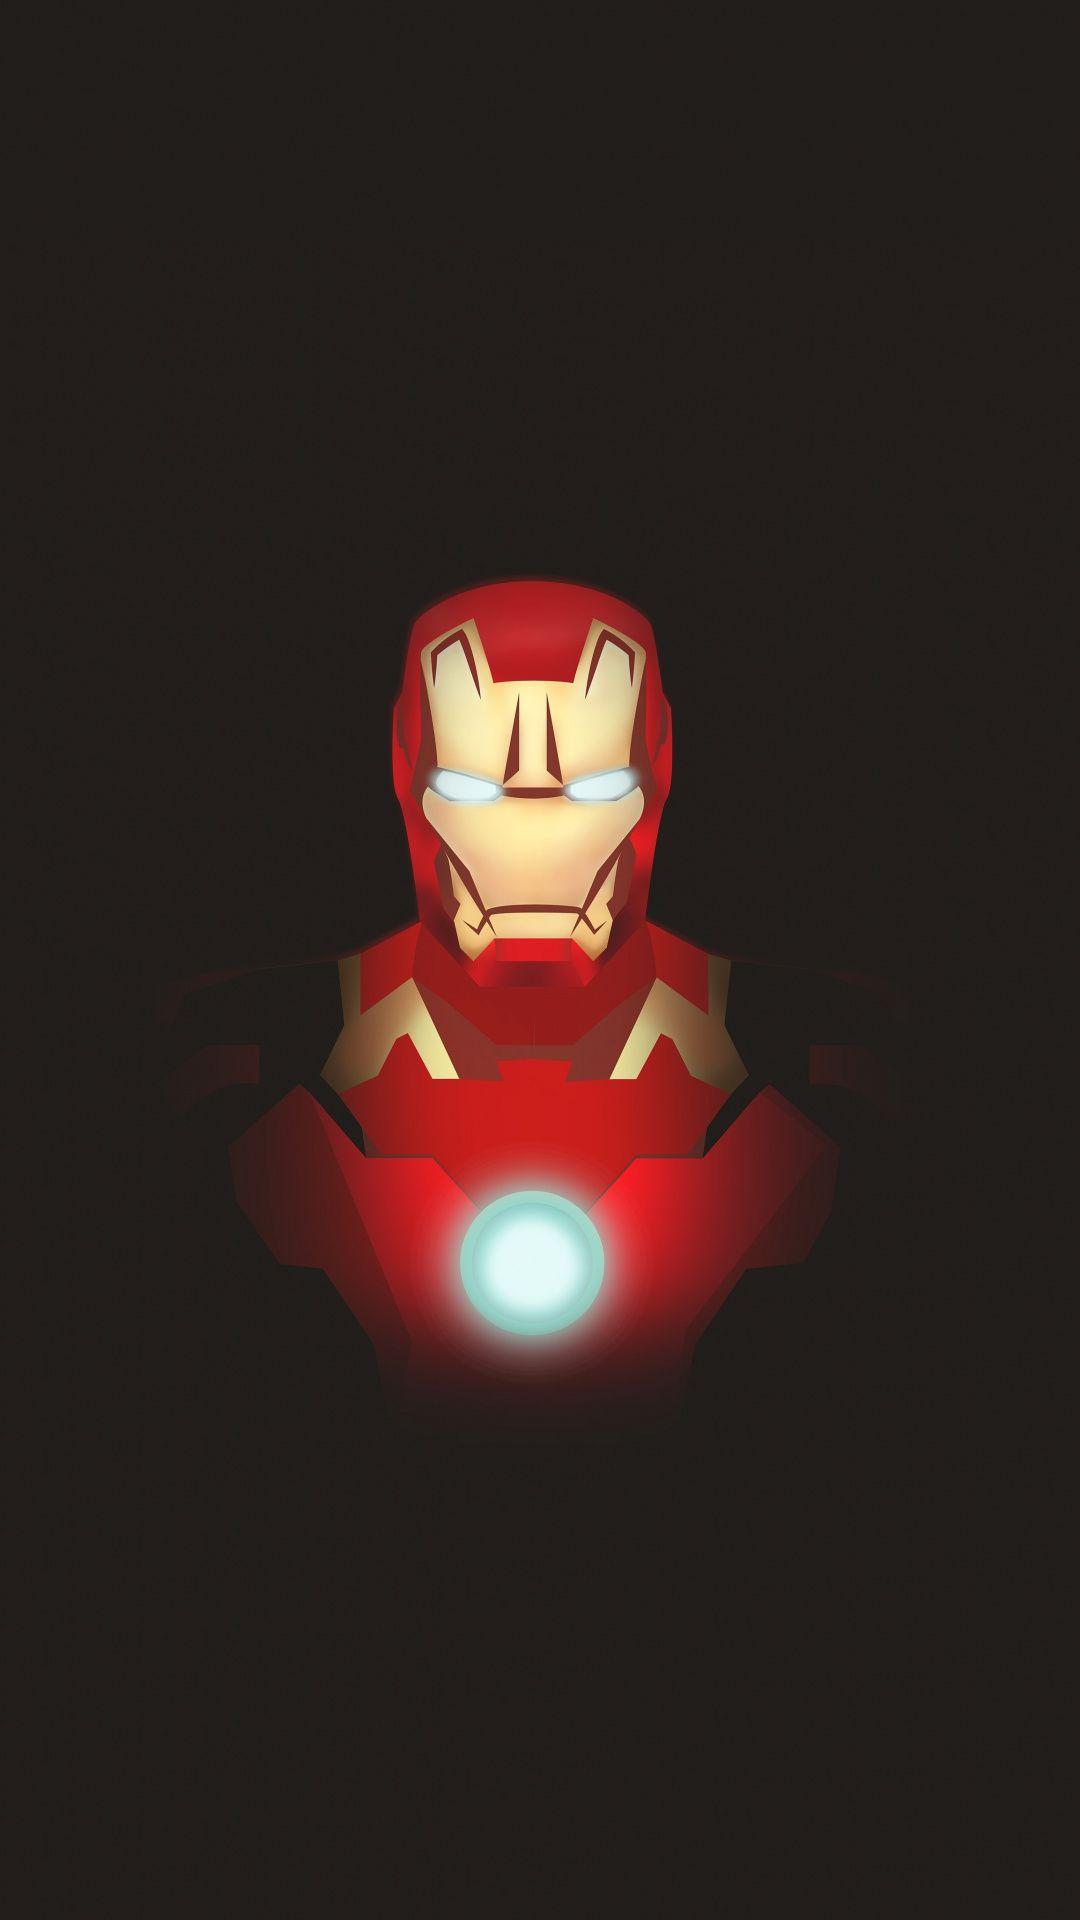 Marvel Iron Man Minimalist Wallpapers